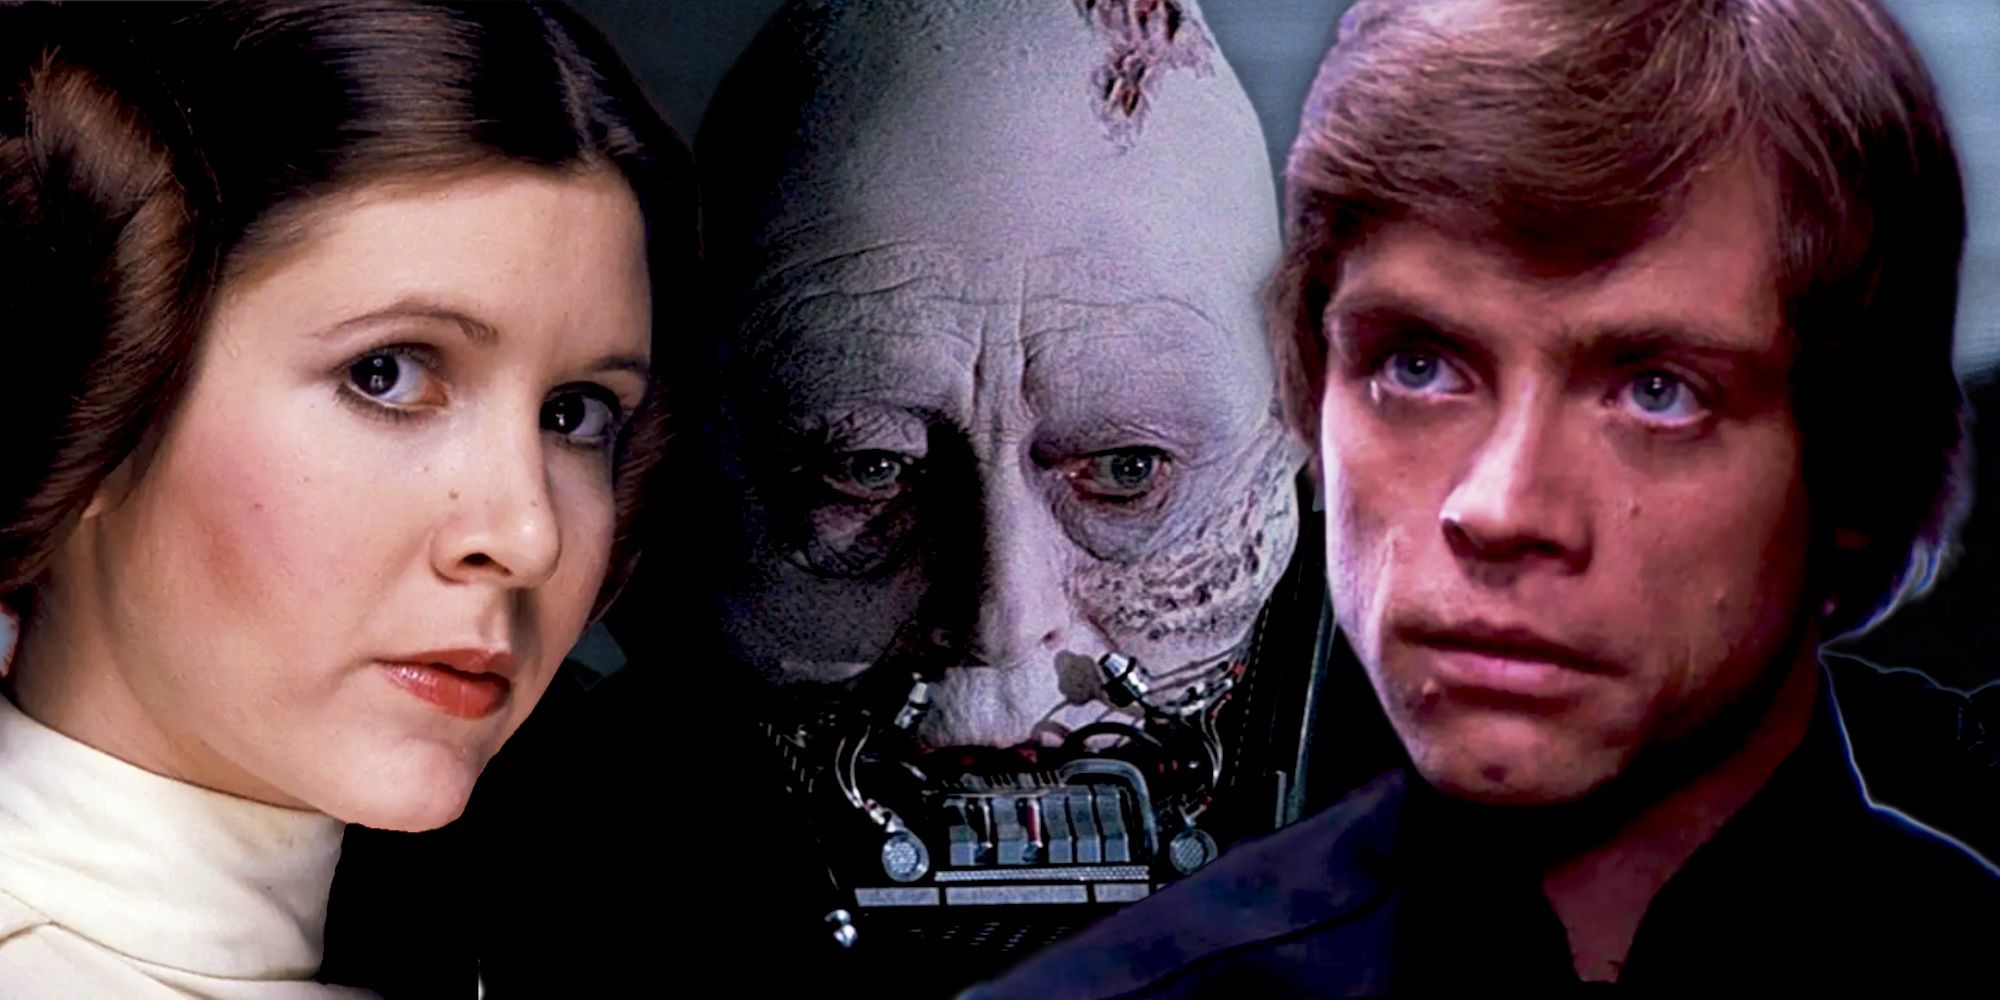 Anakin Skywalker, Luke Skywalker, Princess Leia in Star Wars.